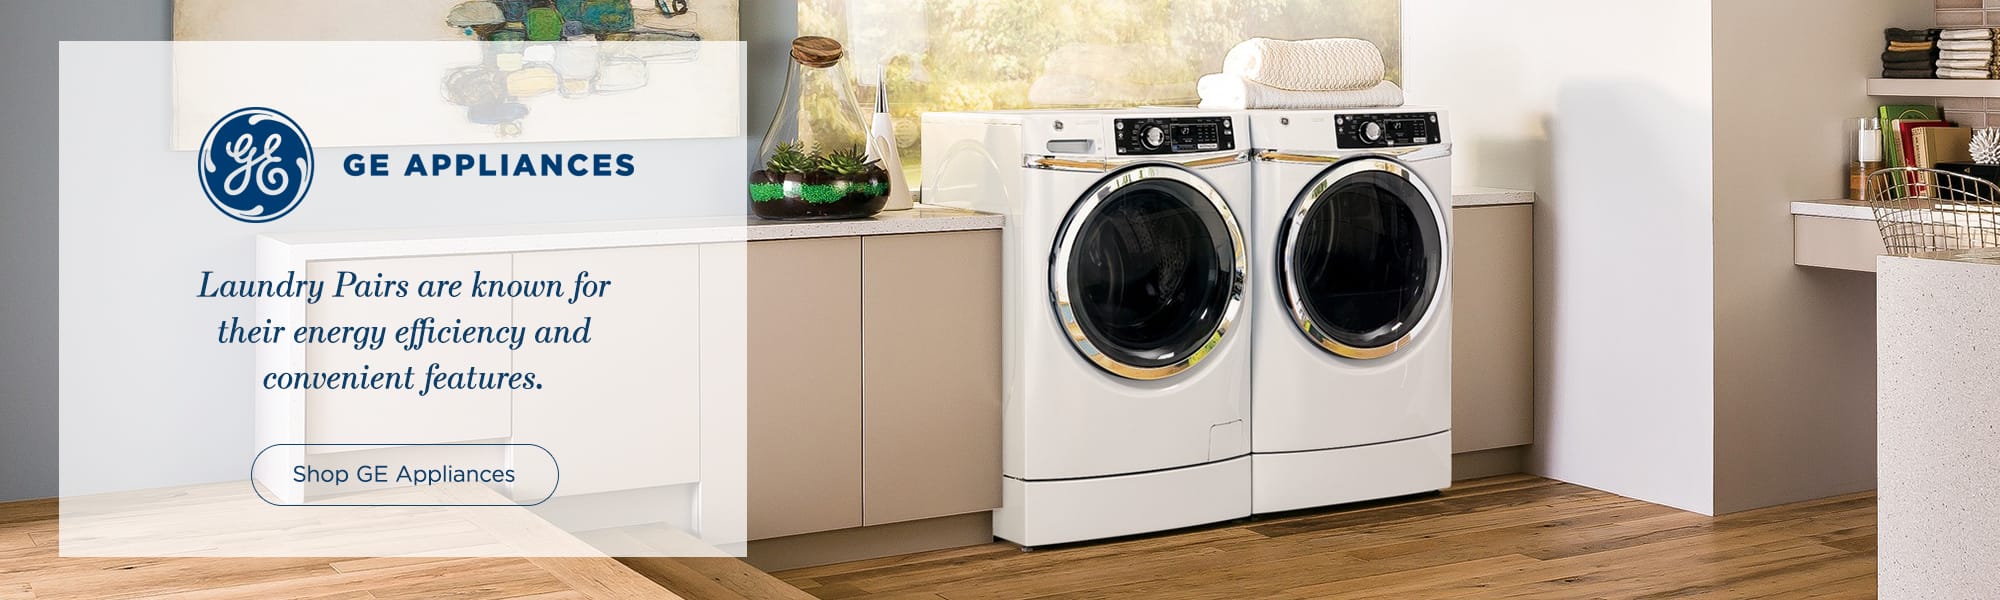 GE Appliances Laundry Pair